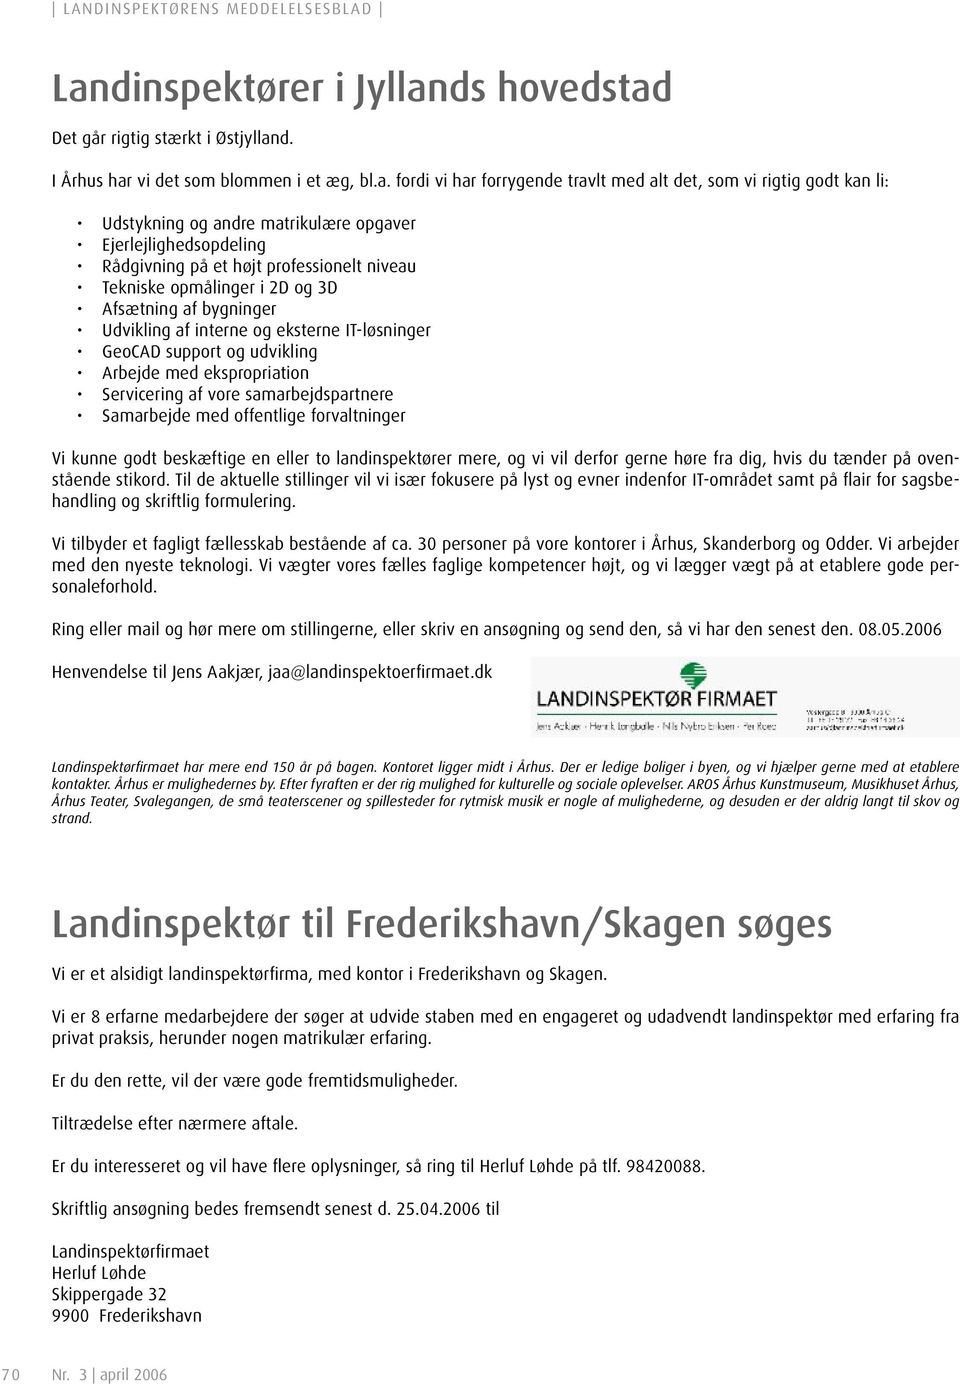 landinspektørens meddelelsesblad - PDF Free Download